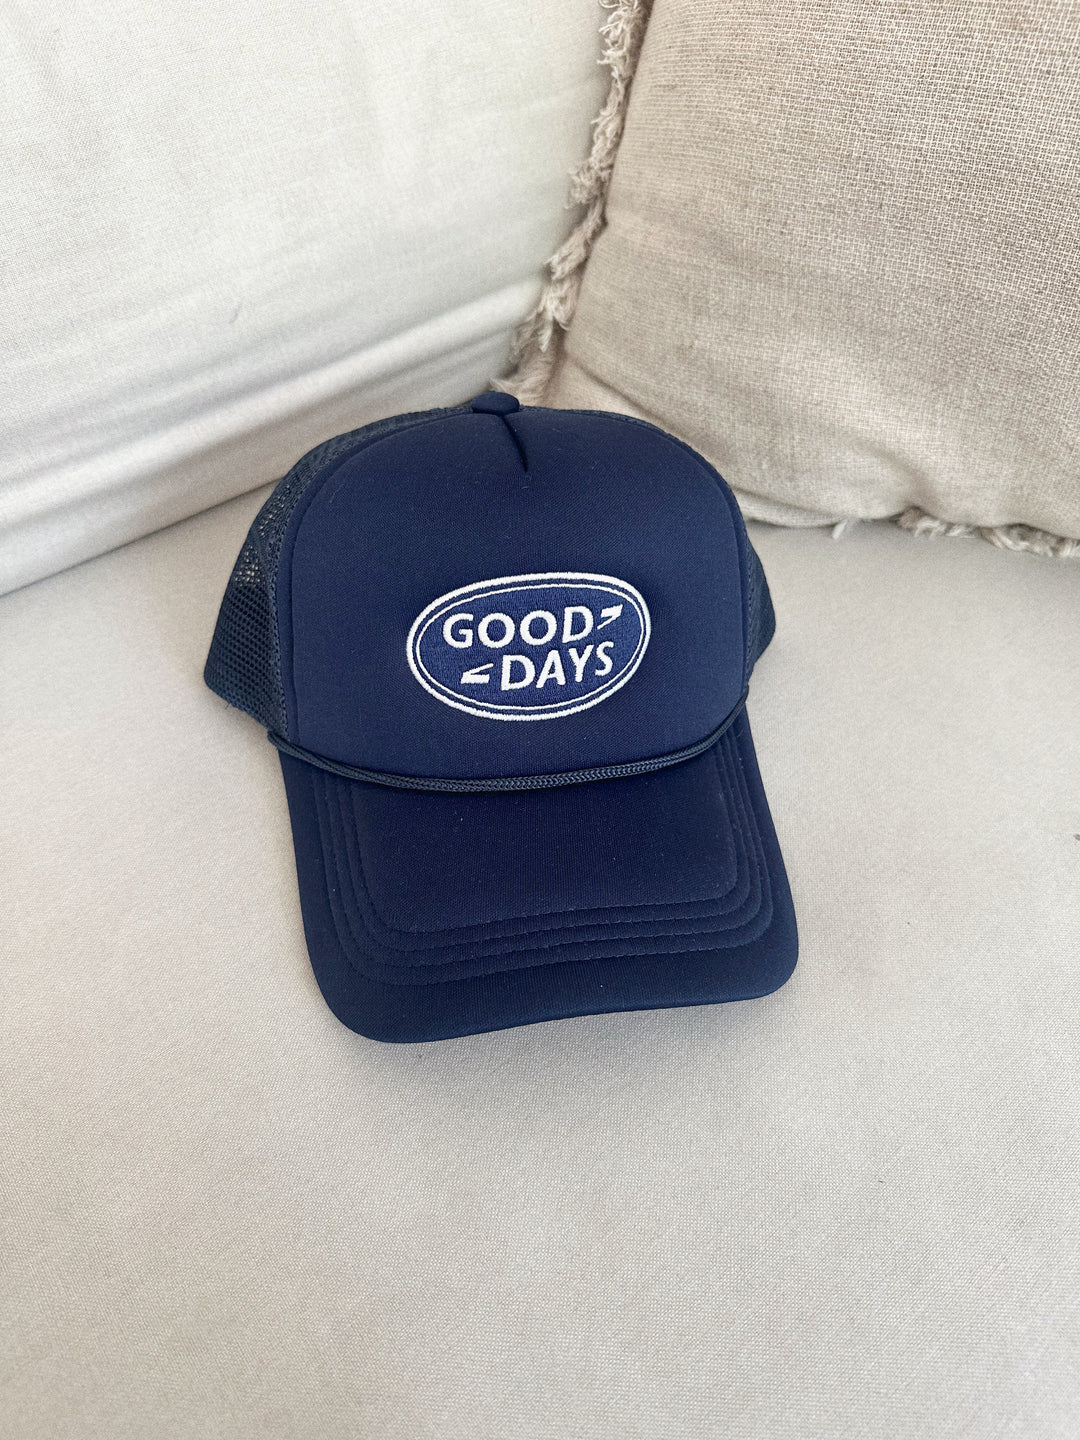 Good Days Trucker Hat Navy